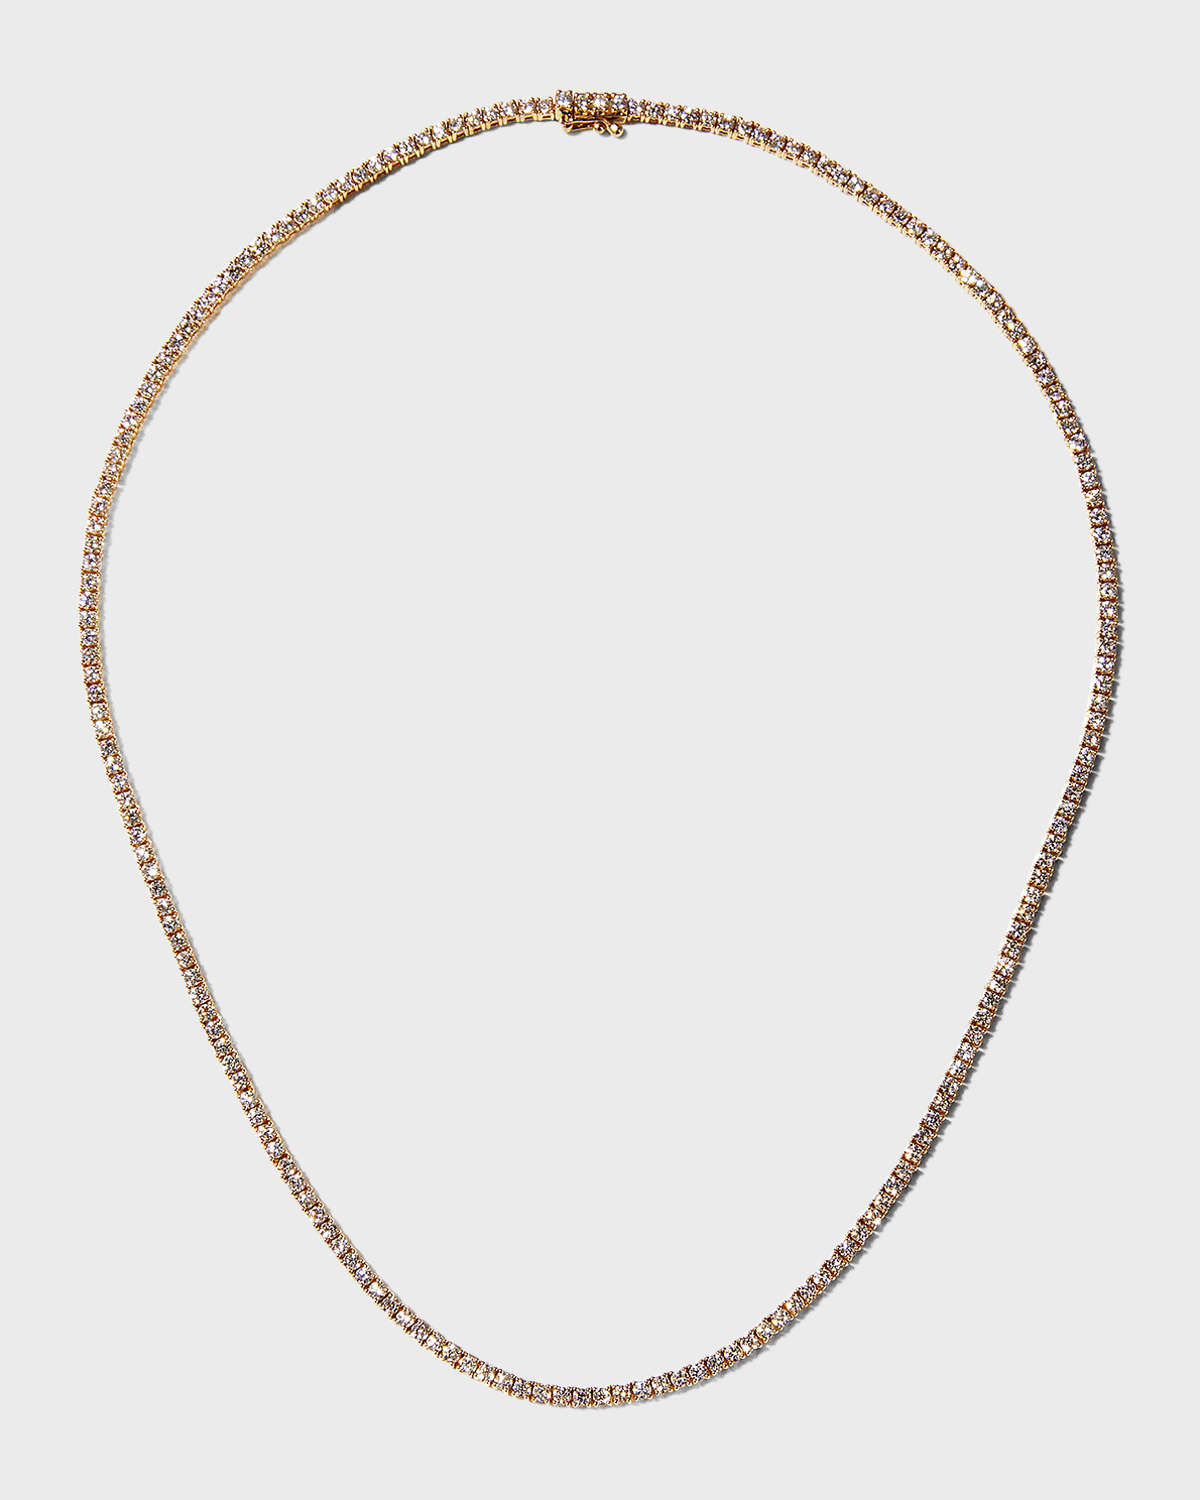 18k Gold Diamond Choker Necklace, 16"L